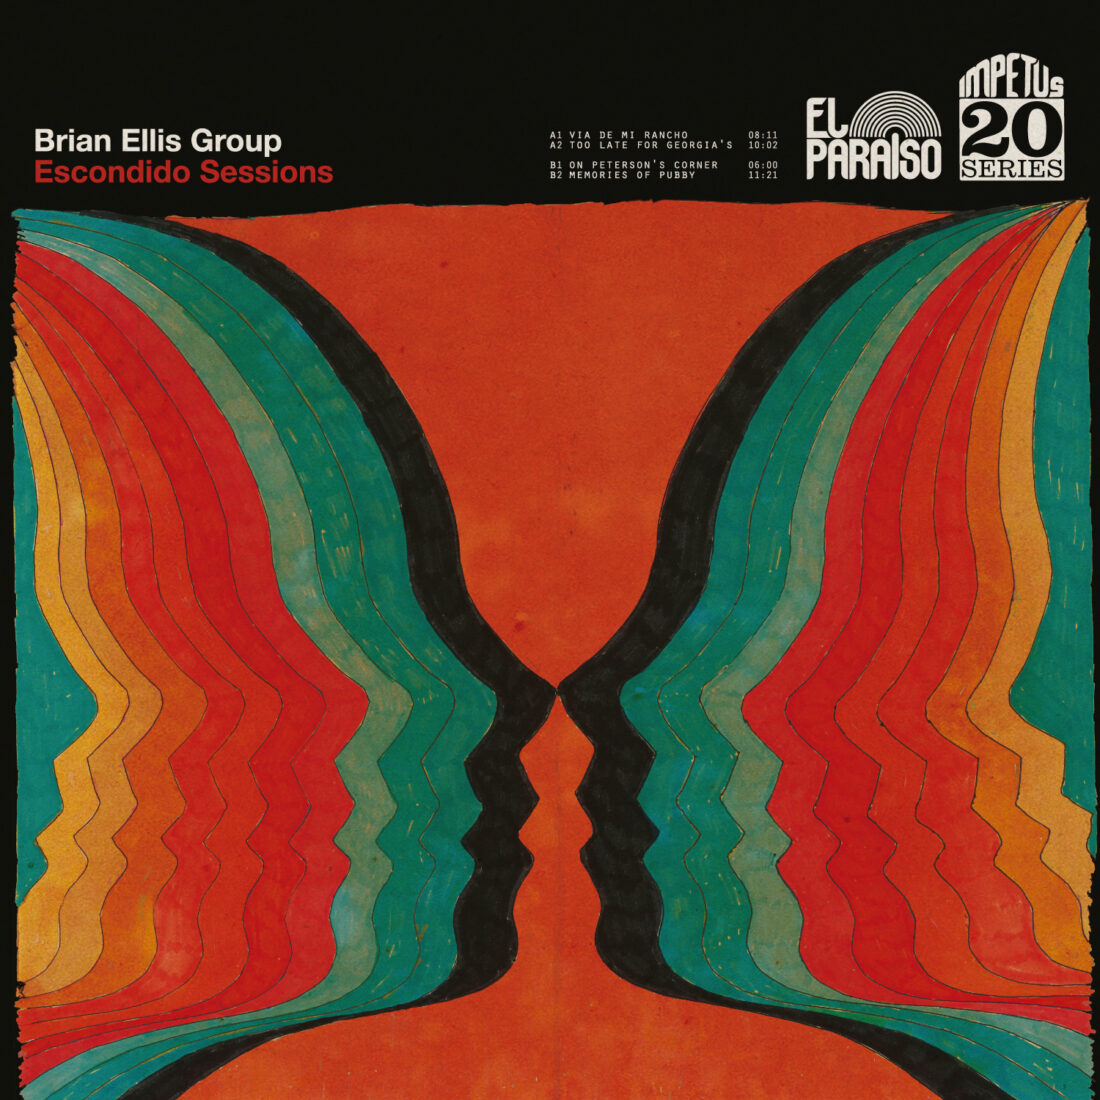 Brian Ellis Group Escondido Sessions El Paraiso Records